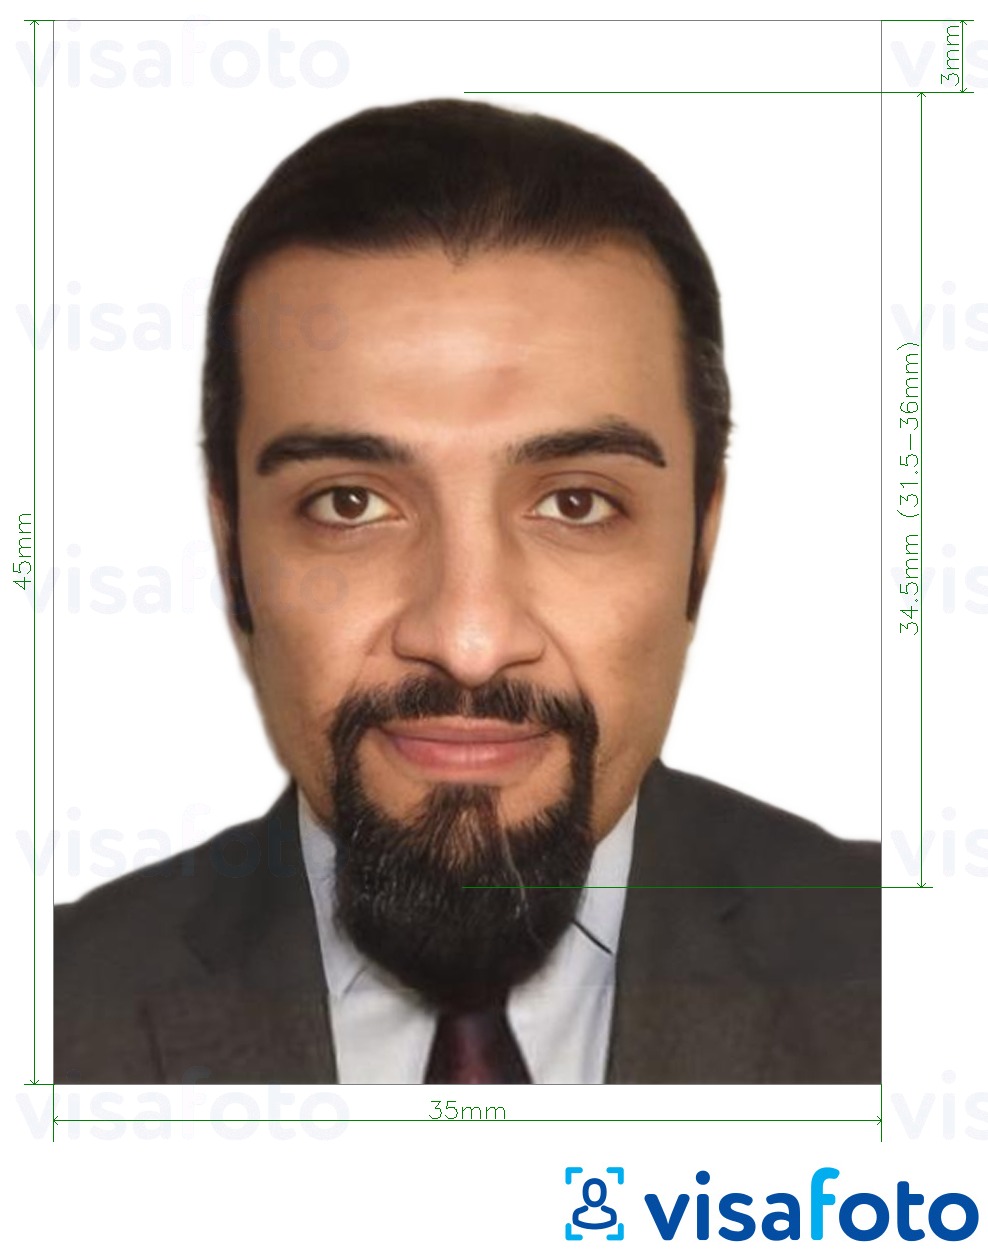 Les photos d'identité pour un visa électronique pour l'Éthiopie